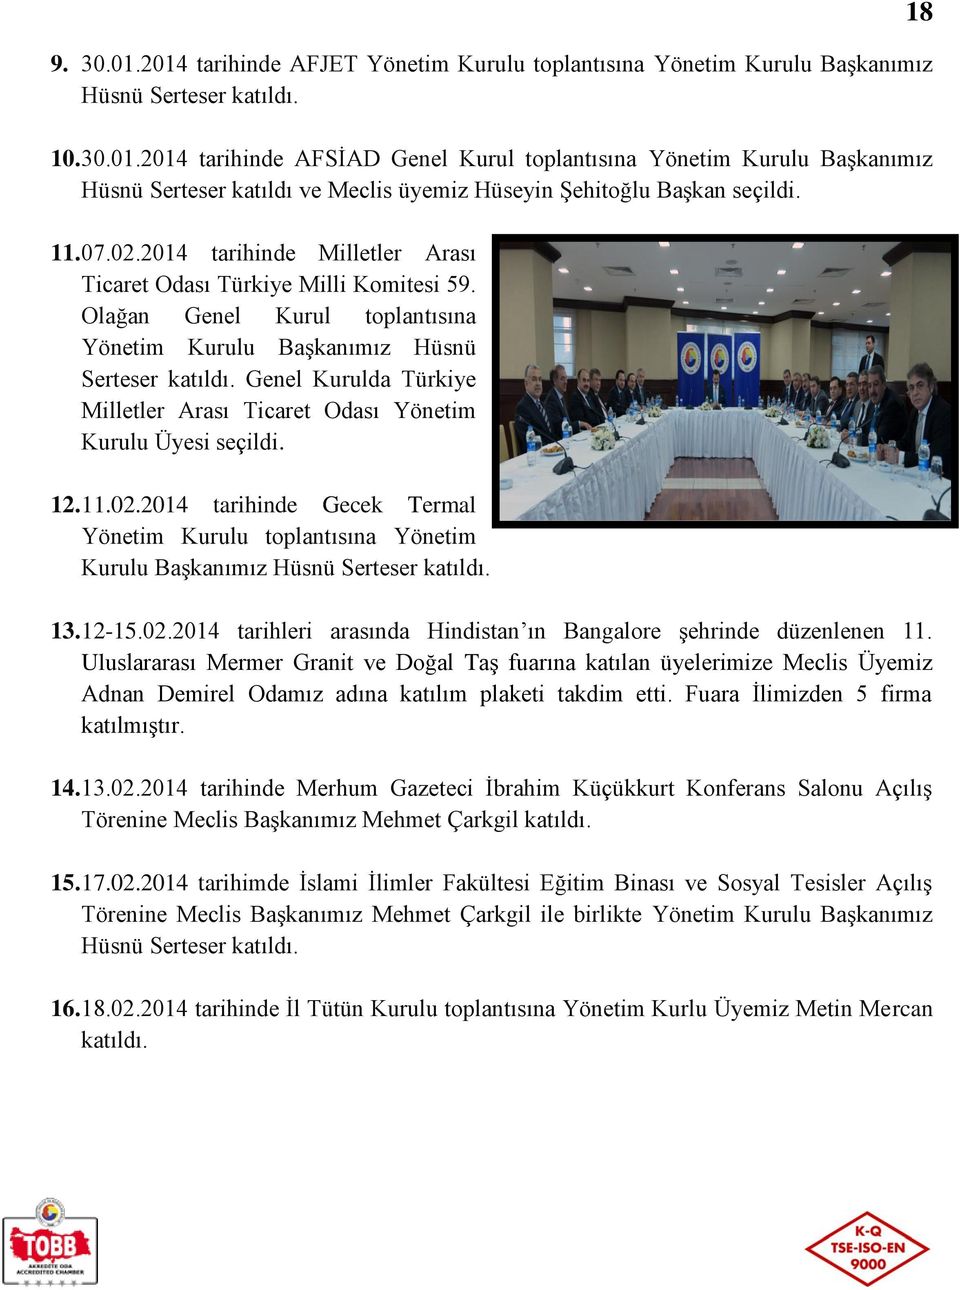 Genel Kurulda Türkiye Milletler Arası Ticaret Odası Yönetim Kurulu Üyesi seçildi. 12. 11.02.2014 tarihinde Gecek Termal Yönetim Kurulu toplantısına Yönetim Kurulu Başkanımız Hüsnü Serteser katıldı.